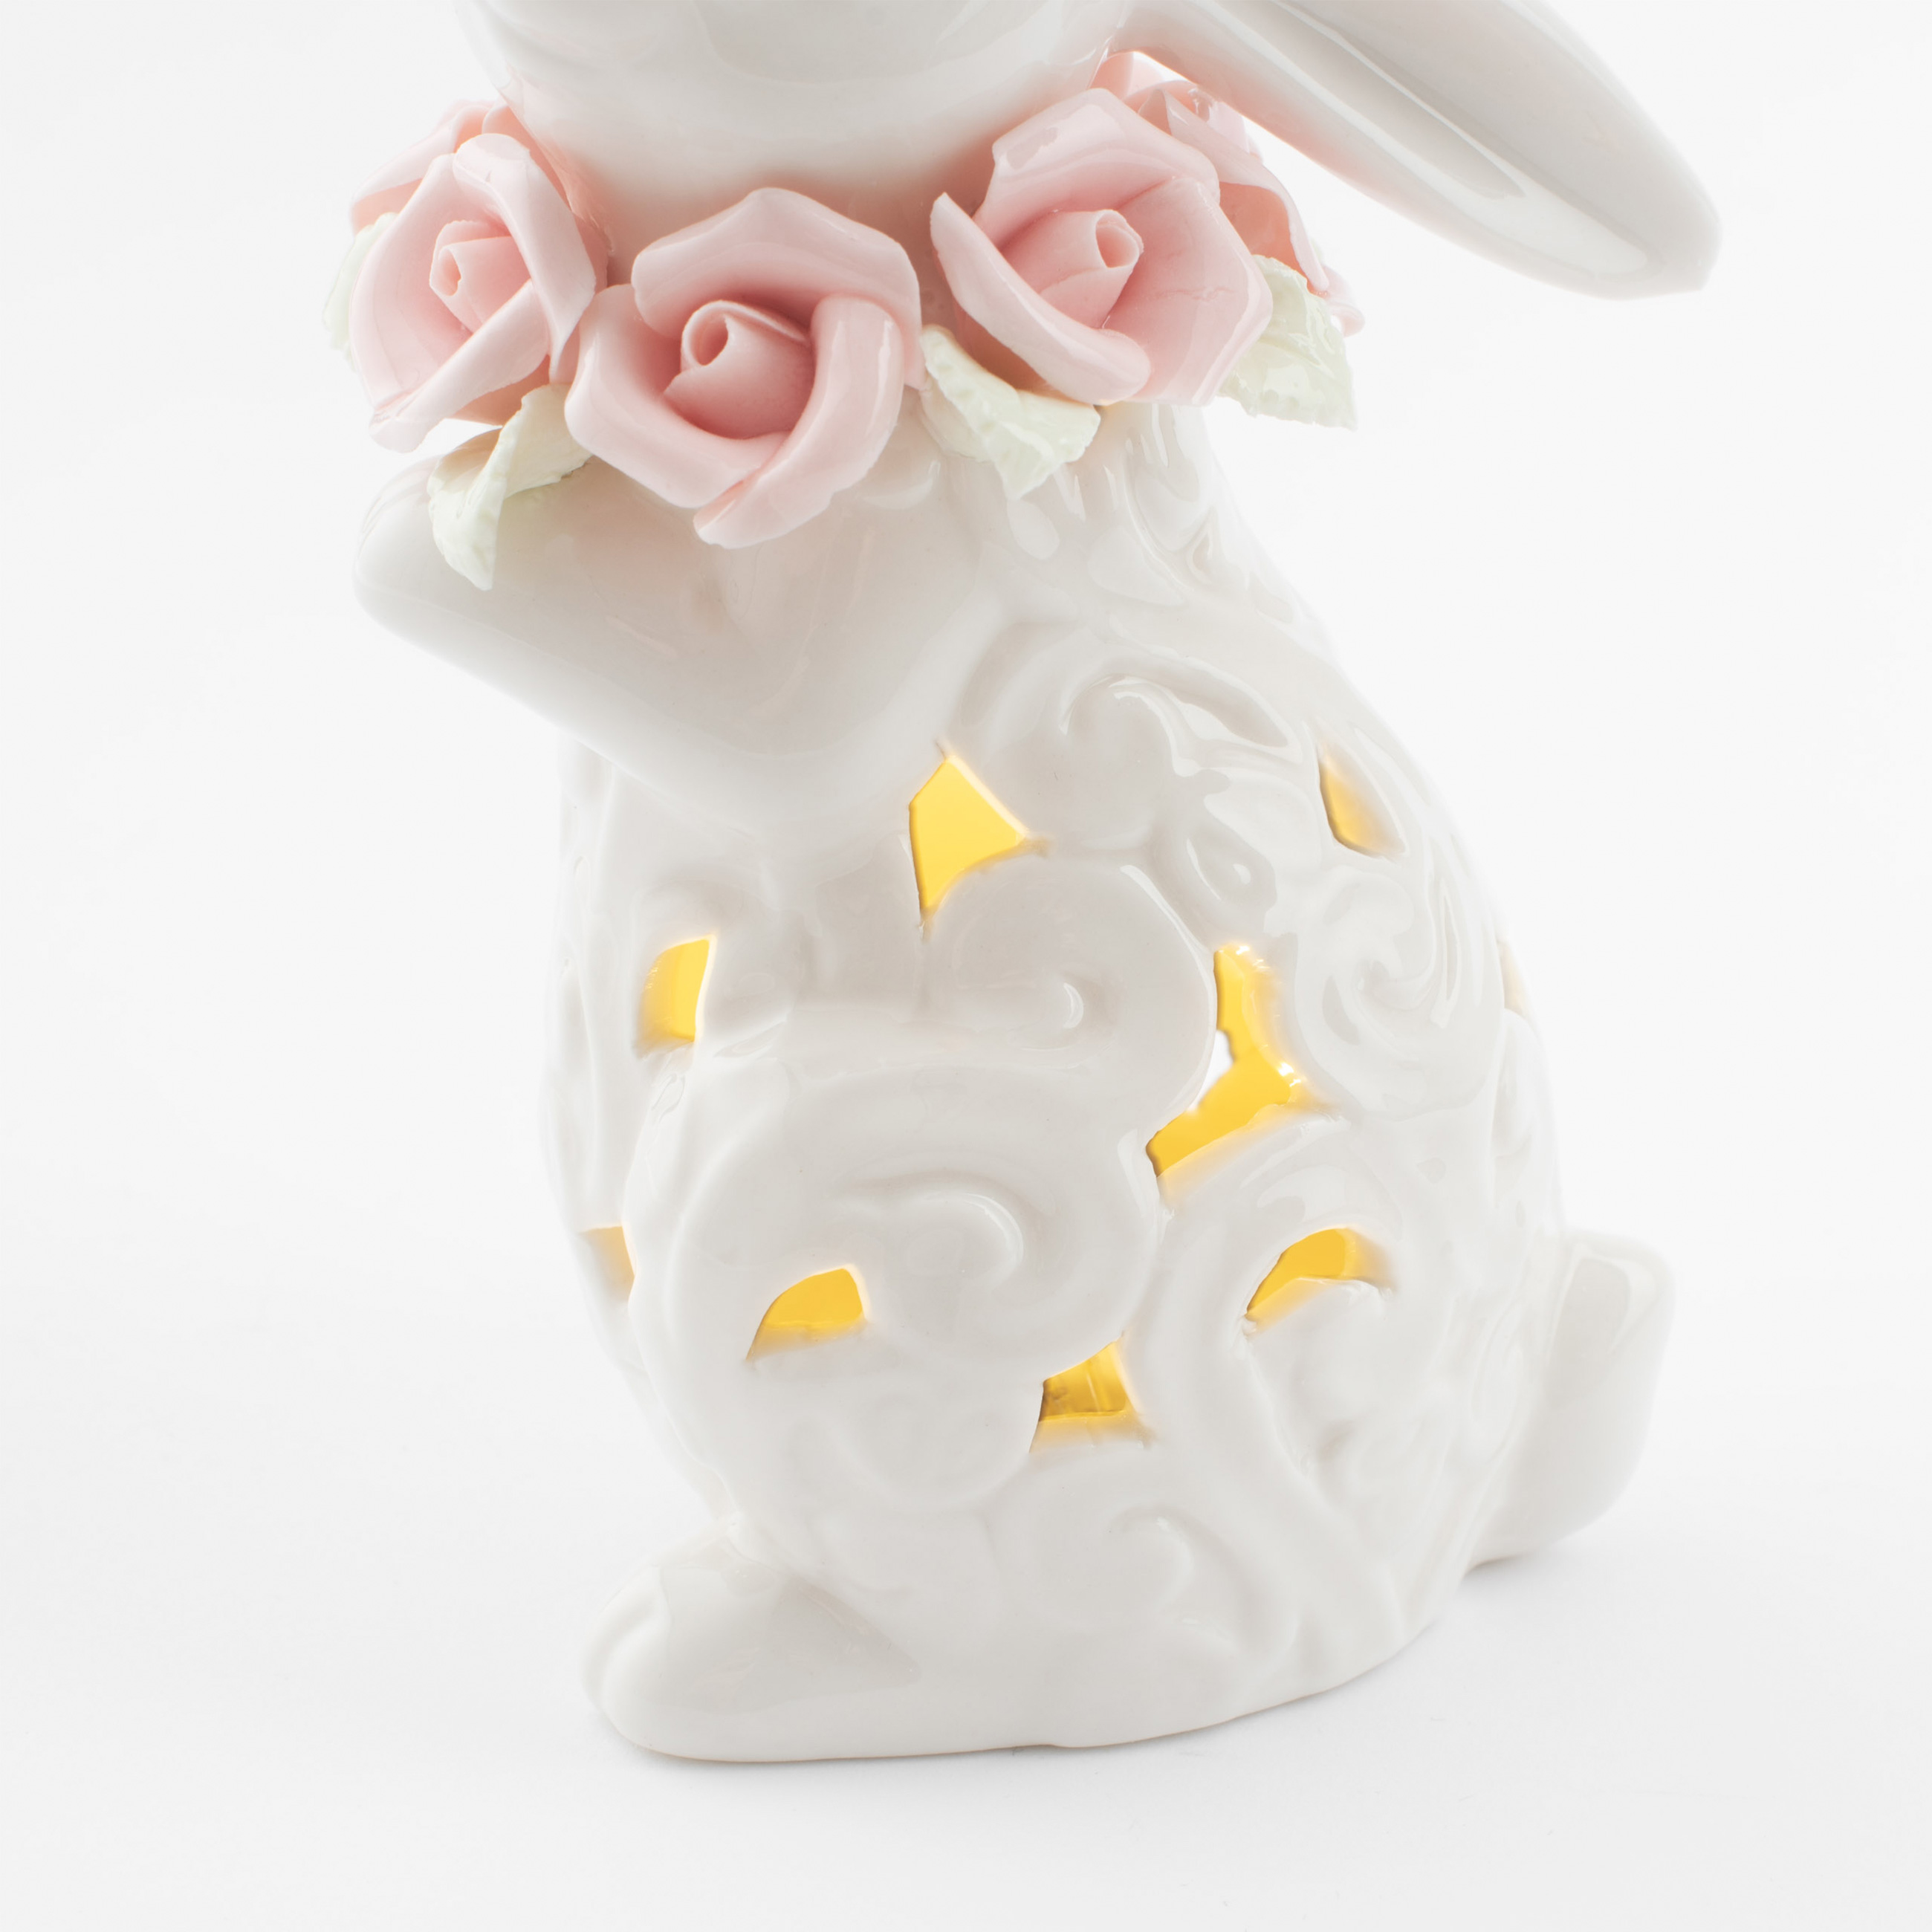 Статуэтка с подсветкой, 13 см, фарфор P, белая, Кролик с цветами, Easter изображение № 5